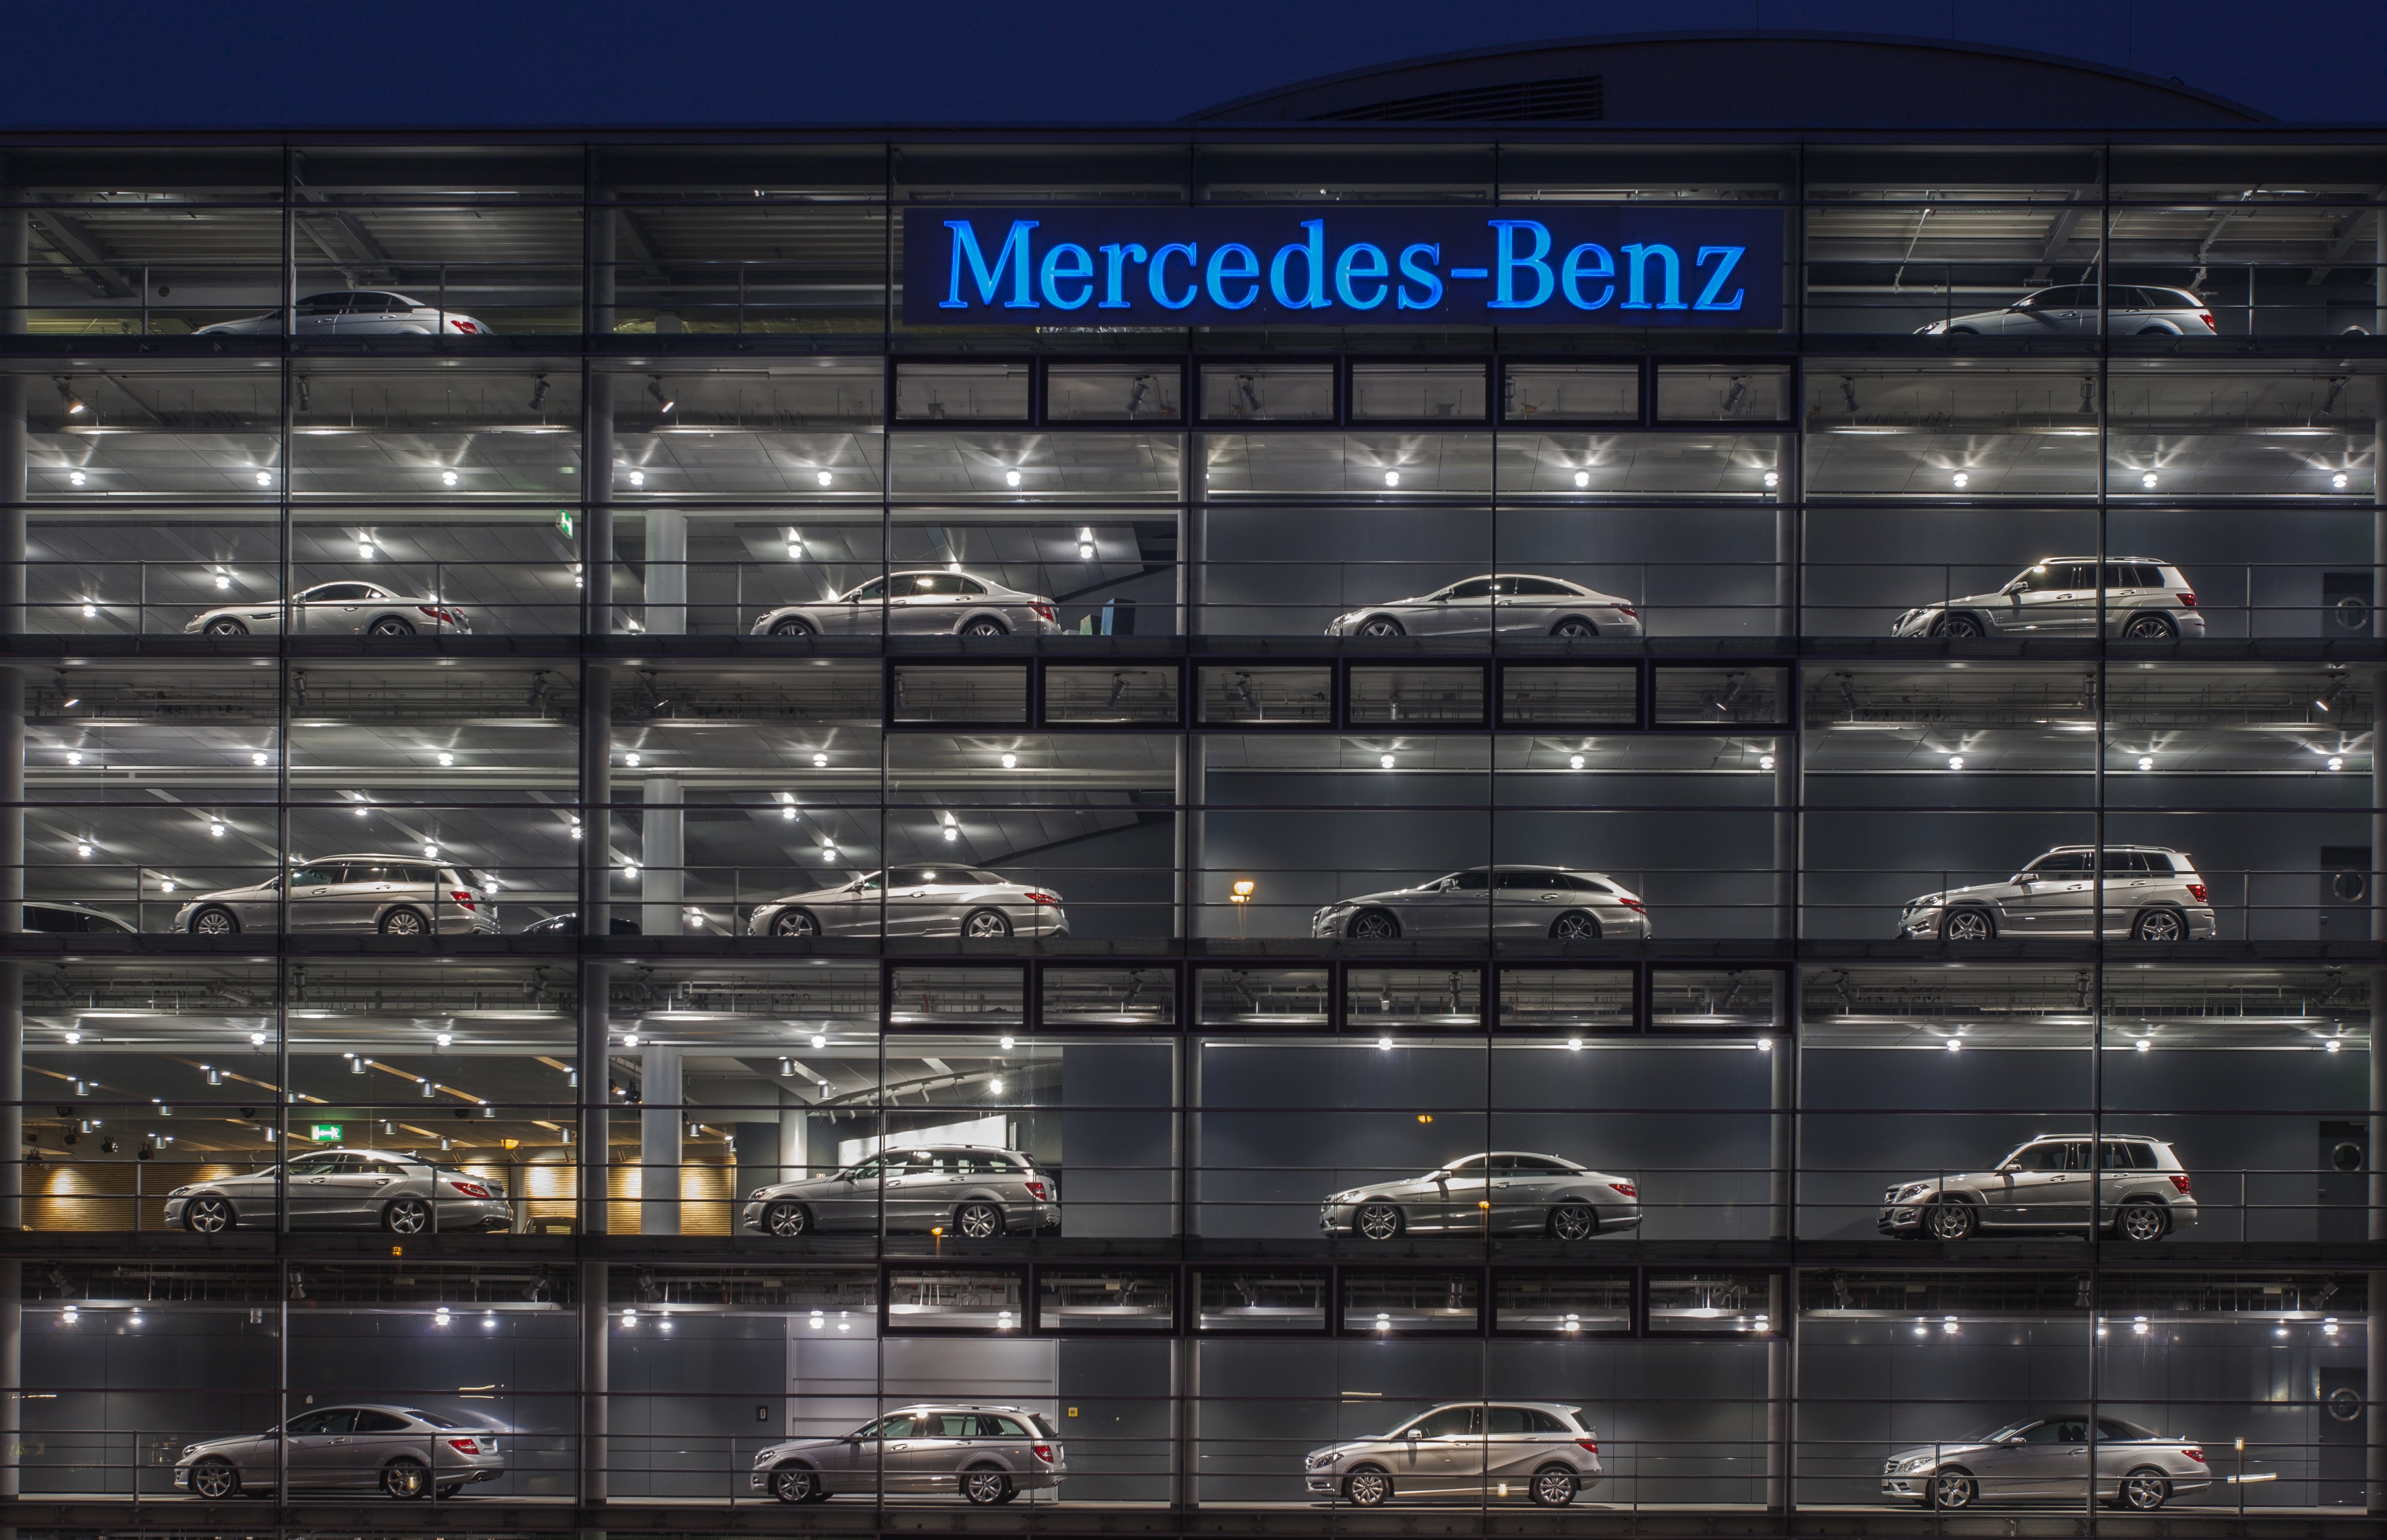 Concesionario de Mercedes-Benz, Múnich, Alemania, 2013-03-30, DD 22